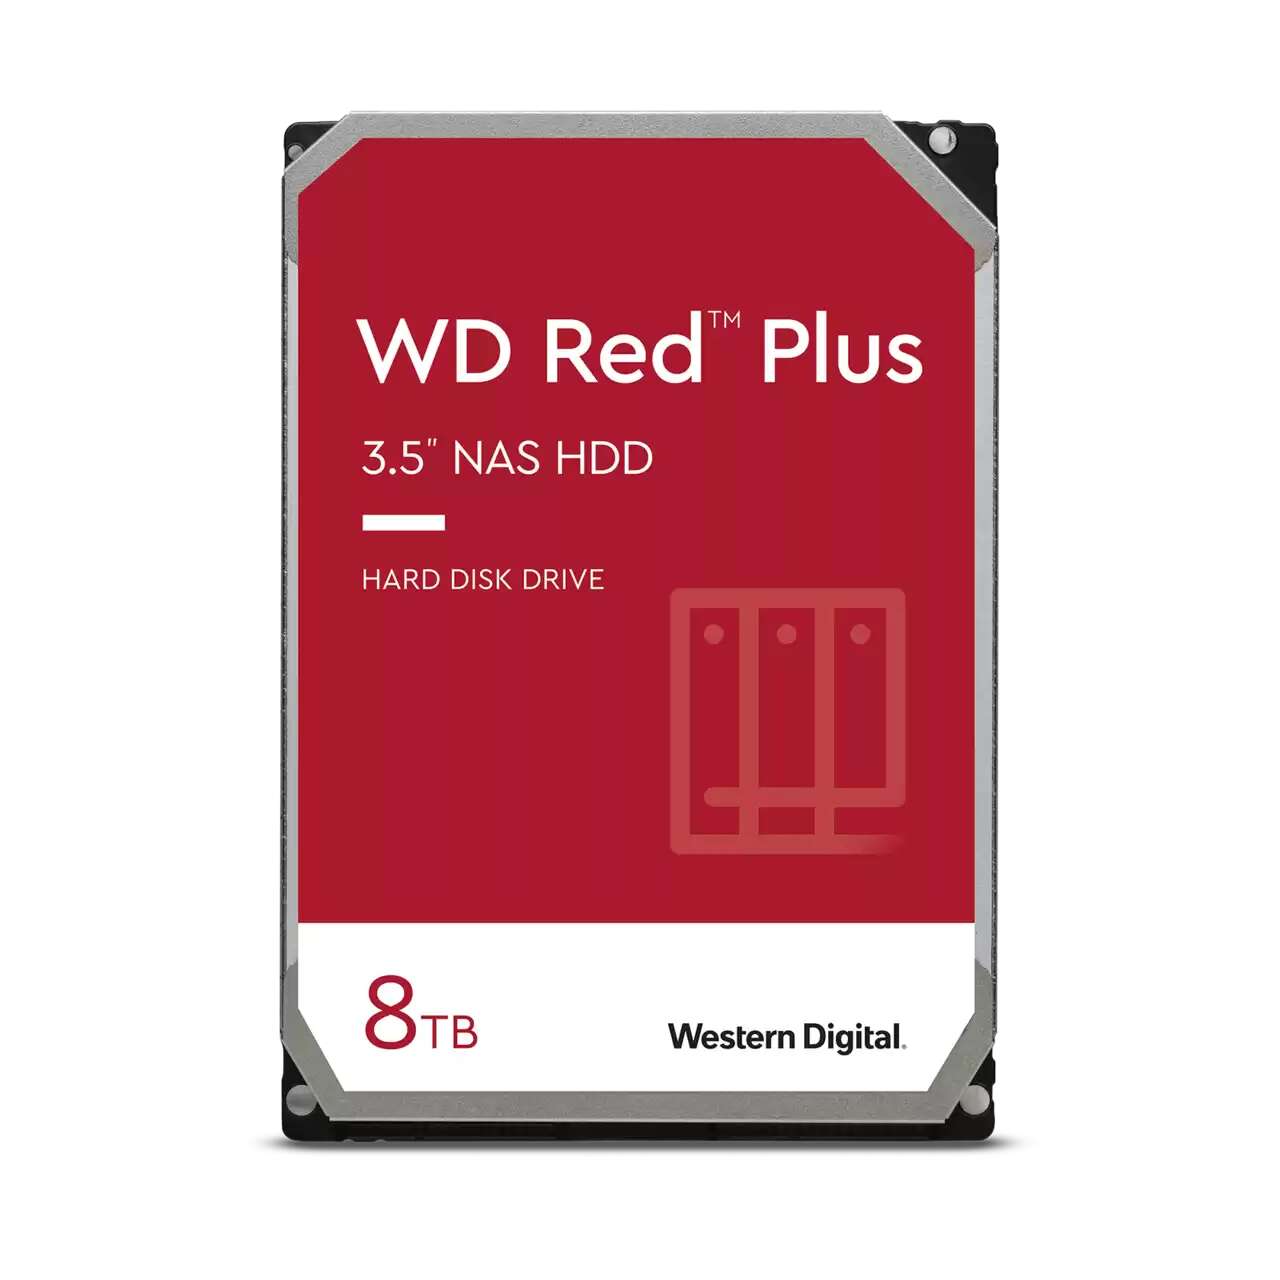 Western digital 8tb red plus sata3 3.5" nas hdd (wd80efpx)